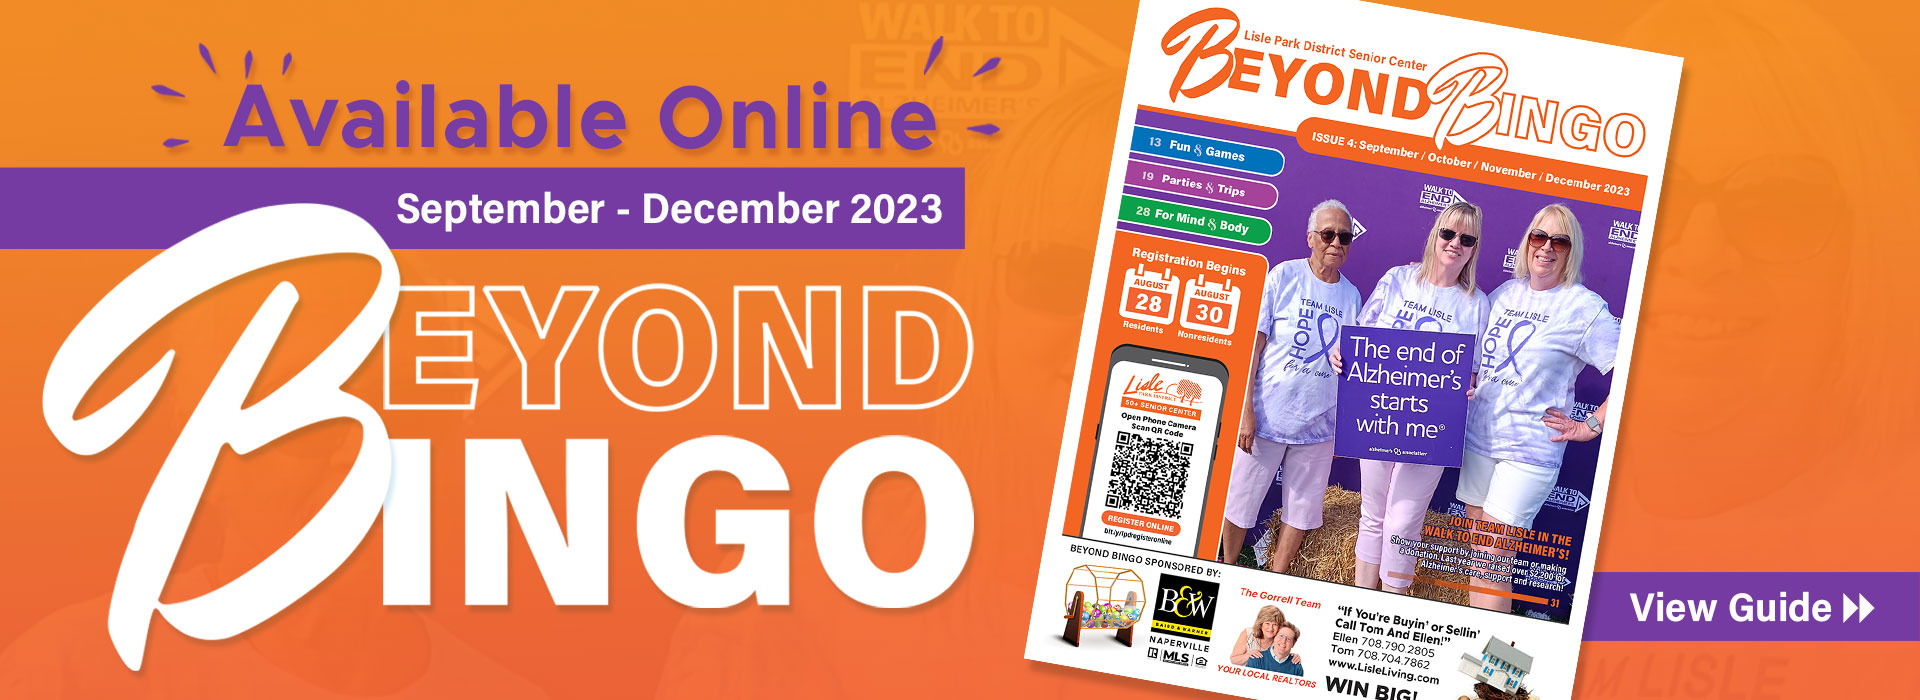 50+ Beyond Bingo September-December 2023 Program Guide